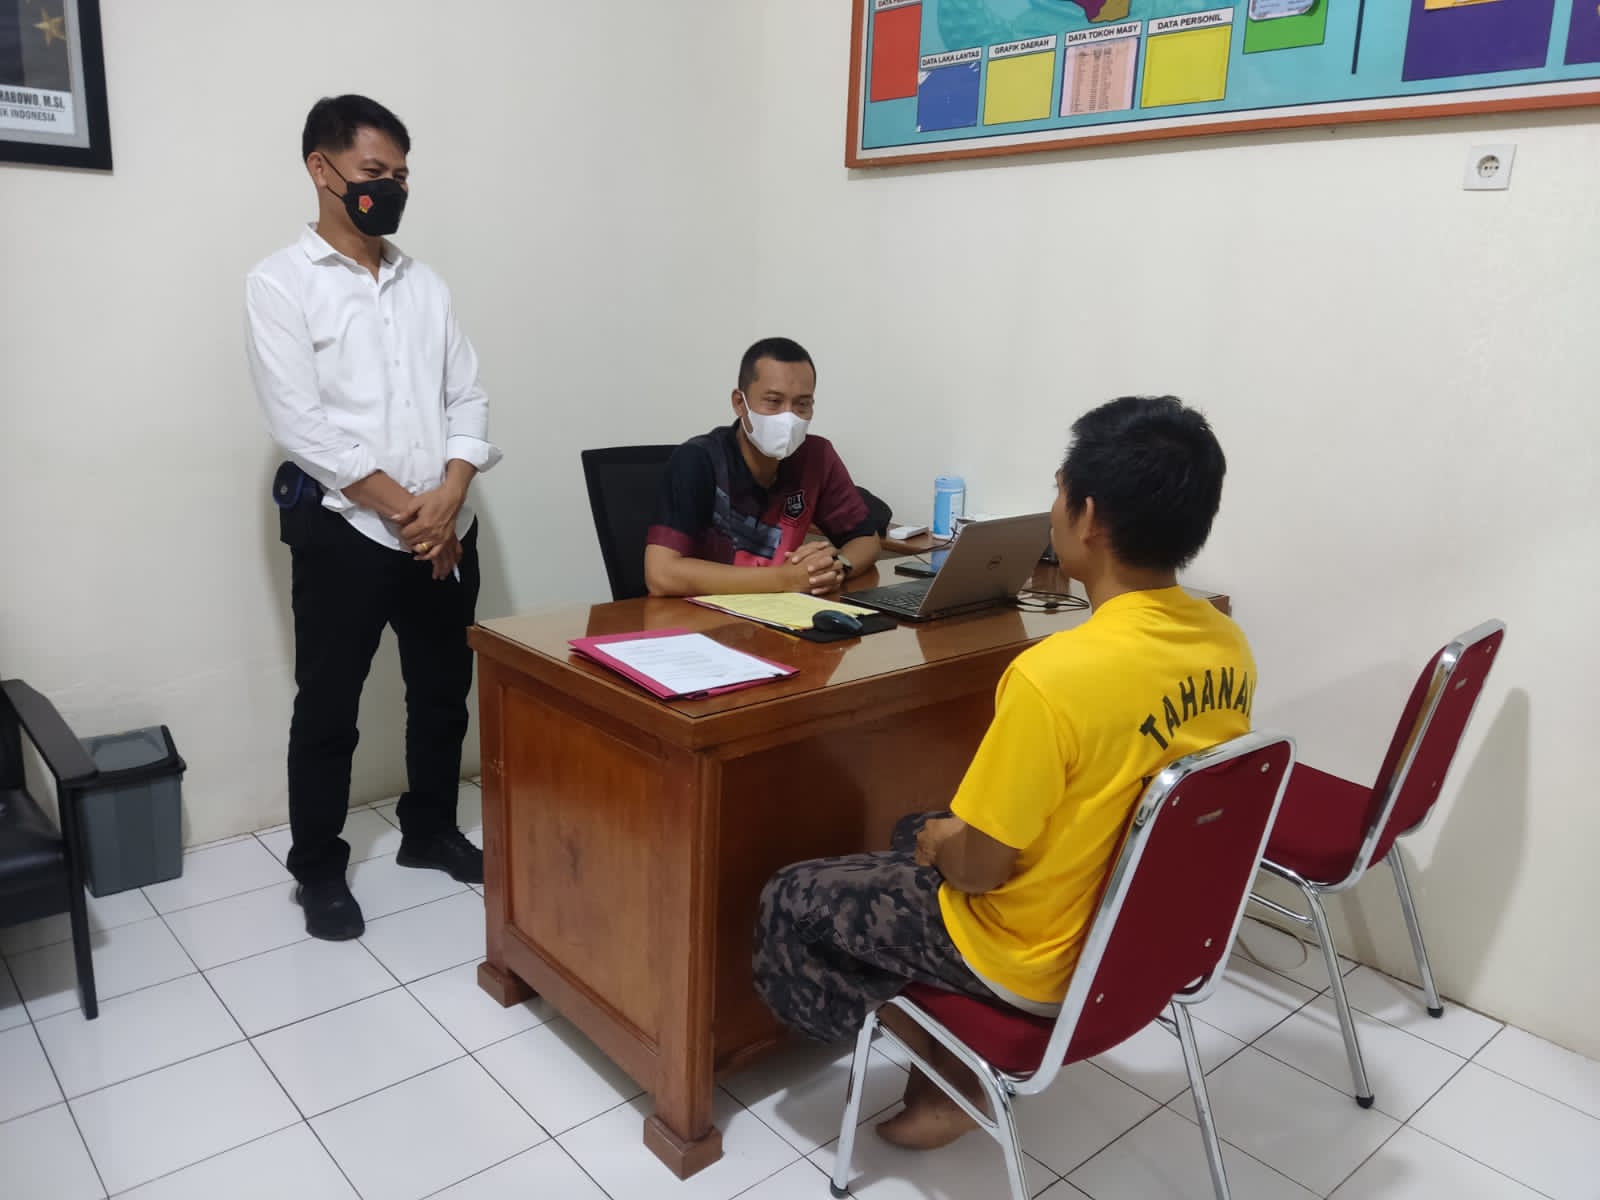 Transaksi di Warung, Bandar Togel Online di Rohul Ditangkap